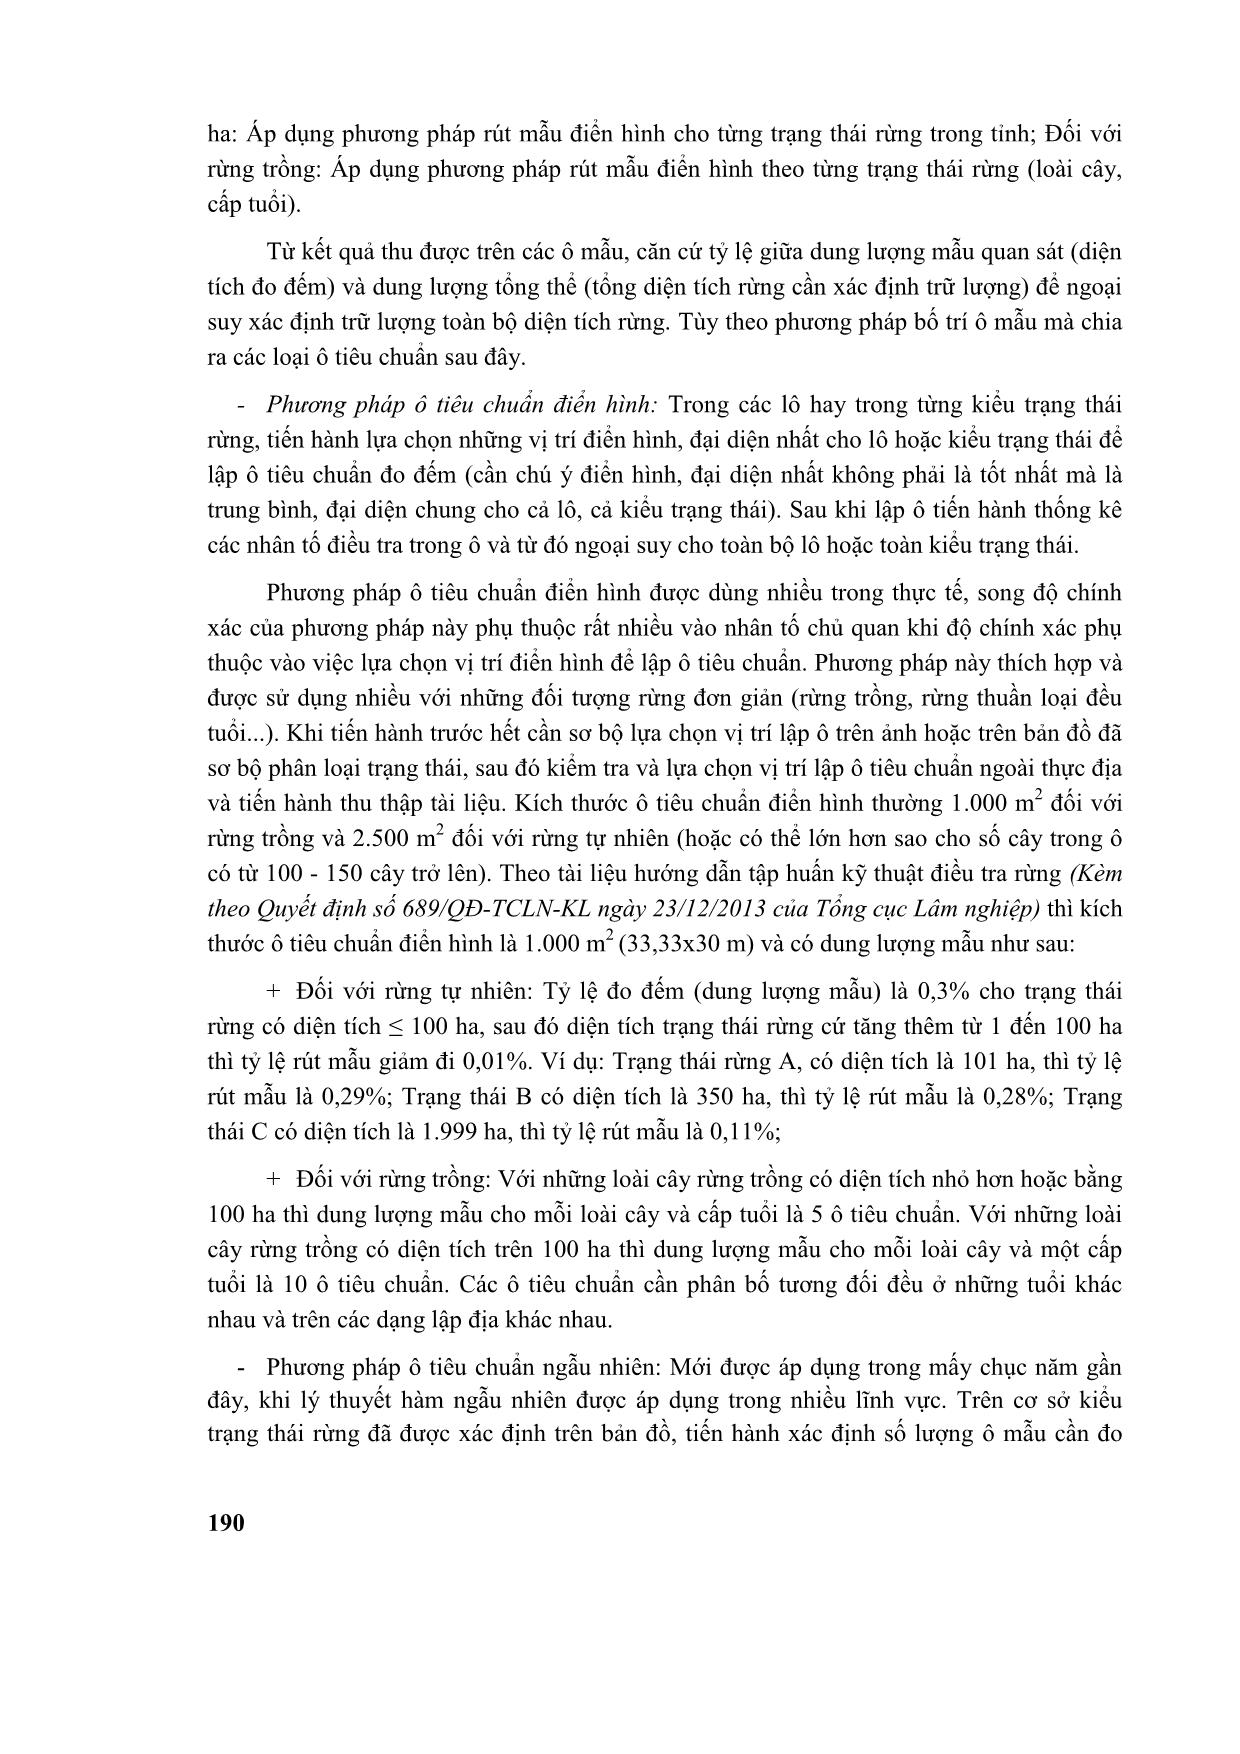 Giáo trình Quy hoạch lâm nghiệp (Phần 2) trang 8